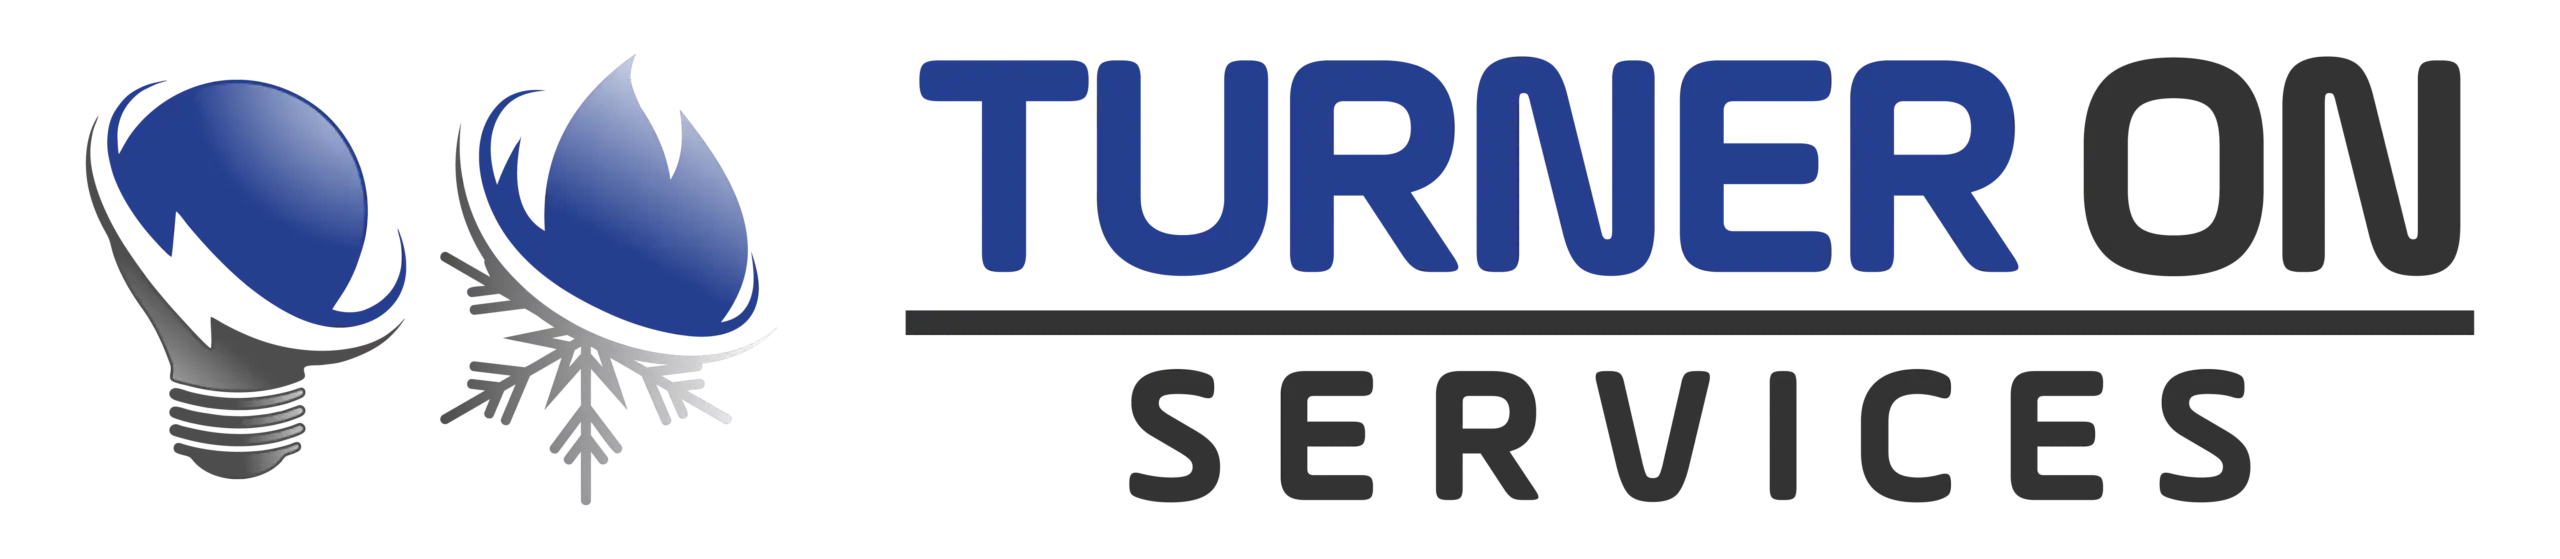 Turner On Services Logo